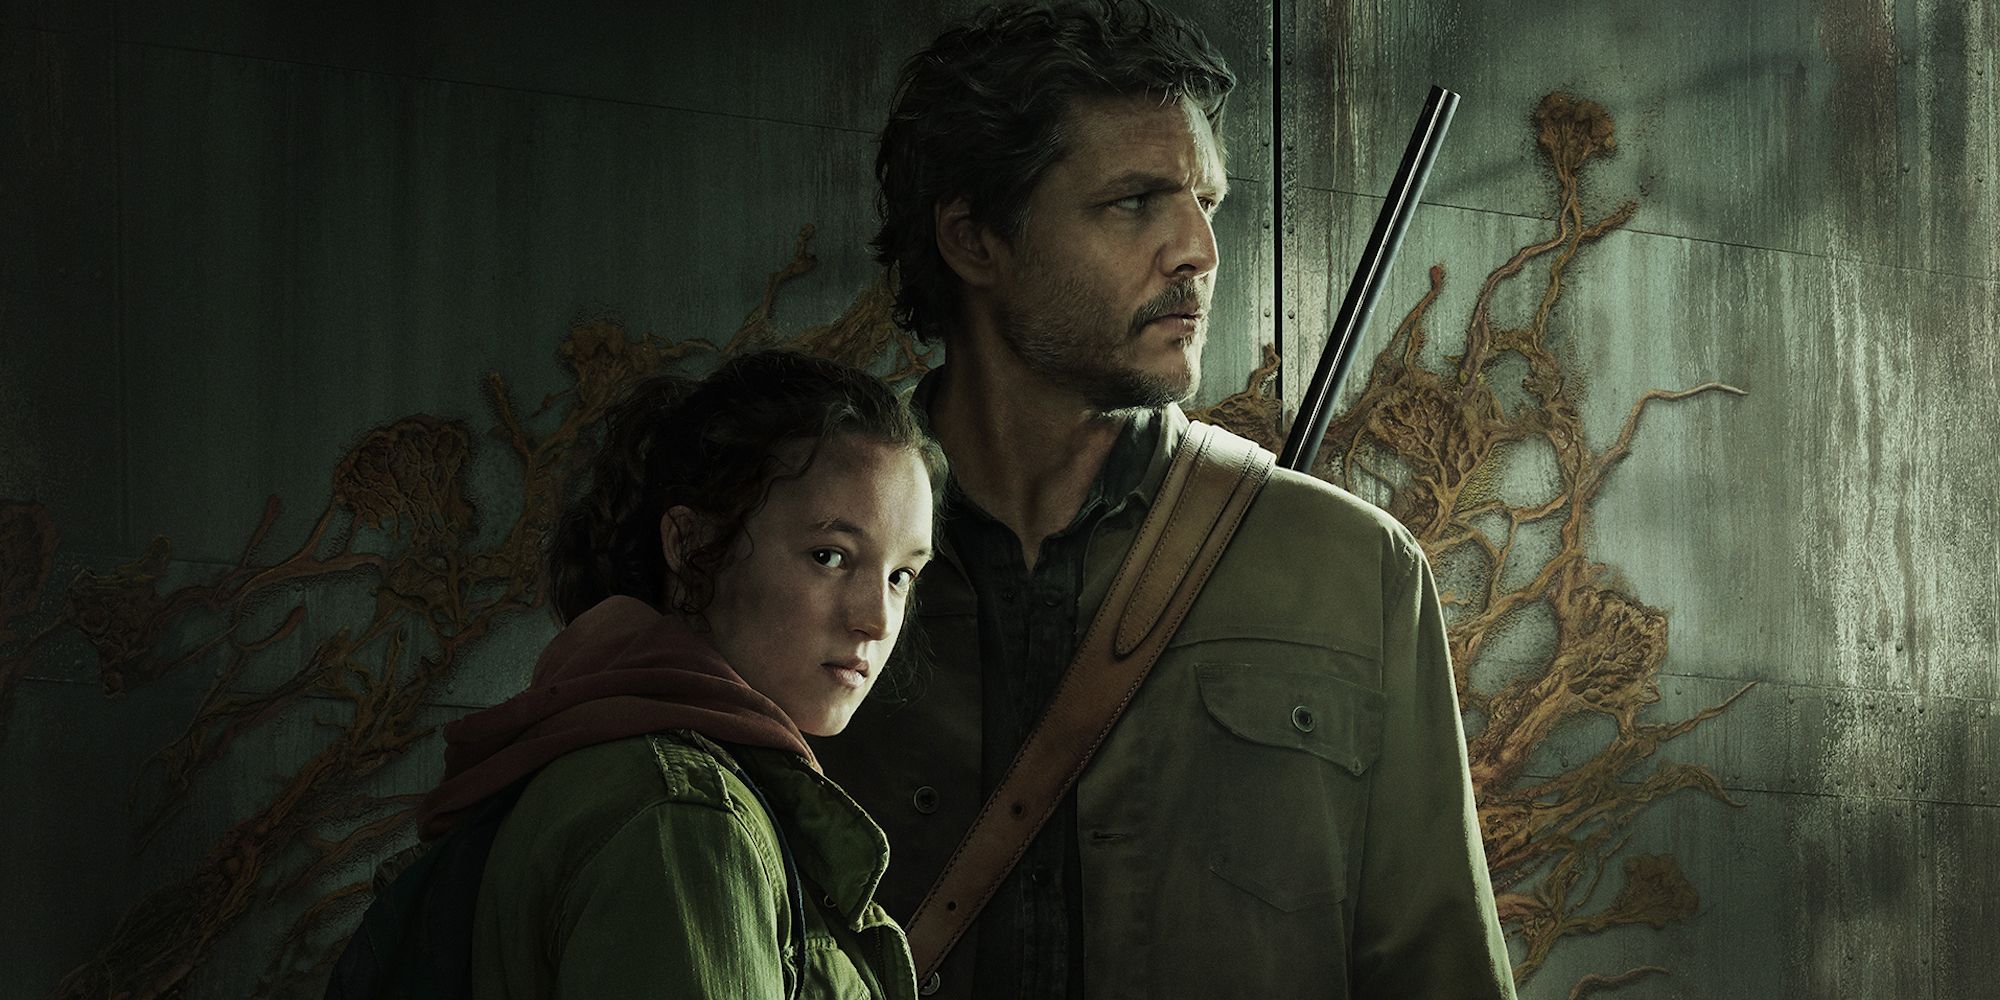 Pedro Pascal dans le rôle de Joel et Bella Ramsey dans le rôle d'Ellie dans une image promotionnelle de The Last of Us.